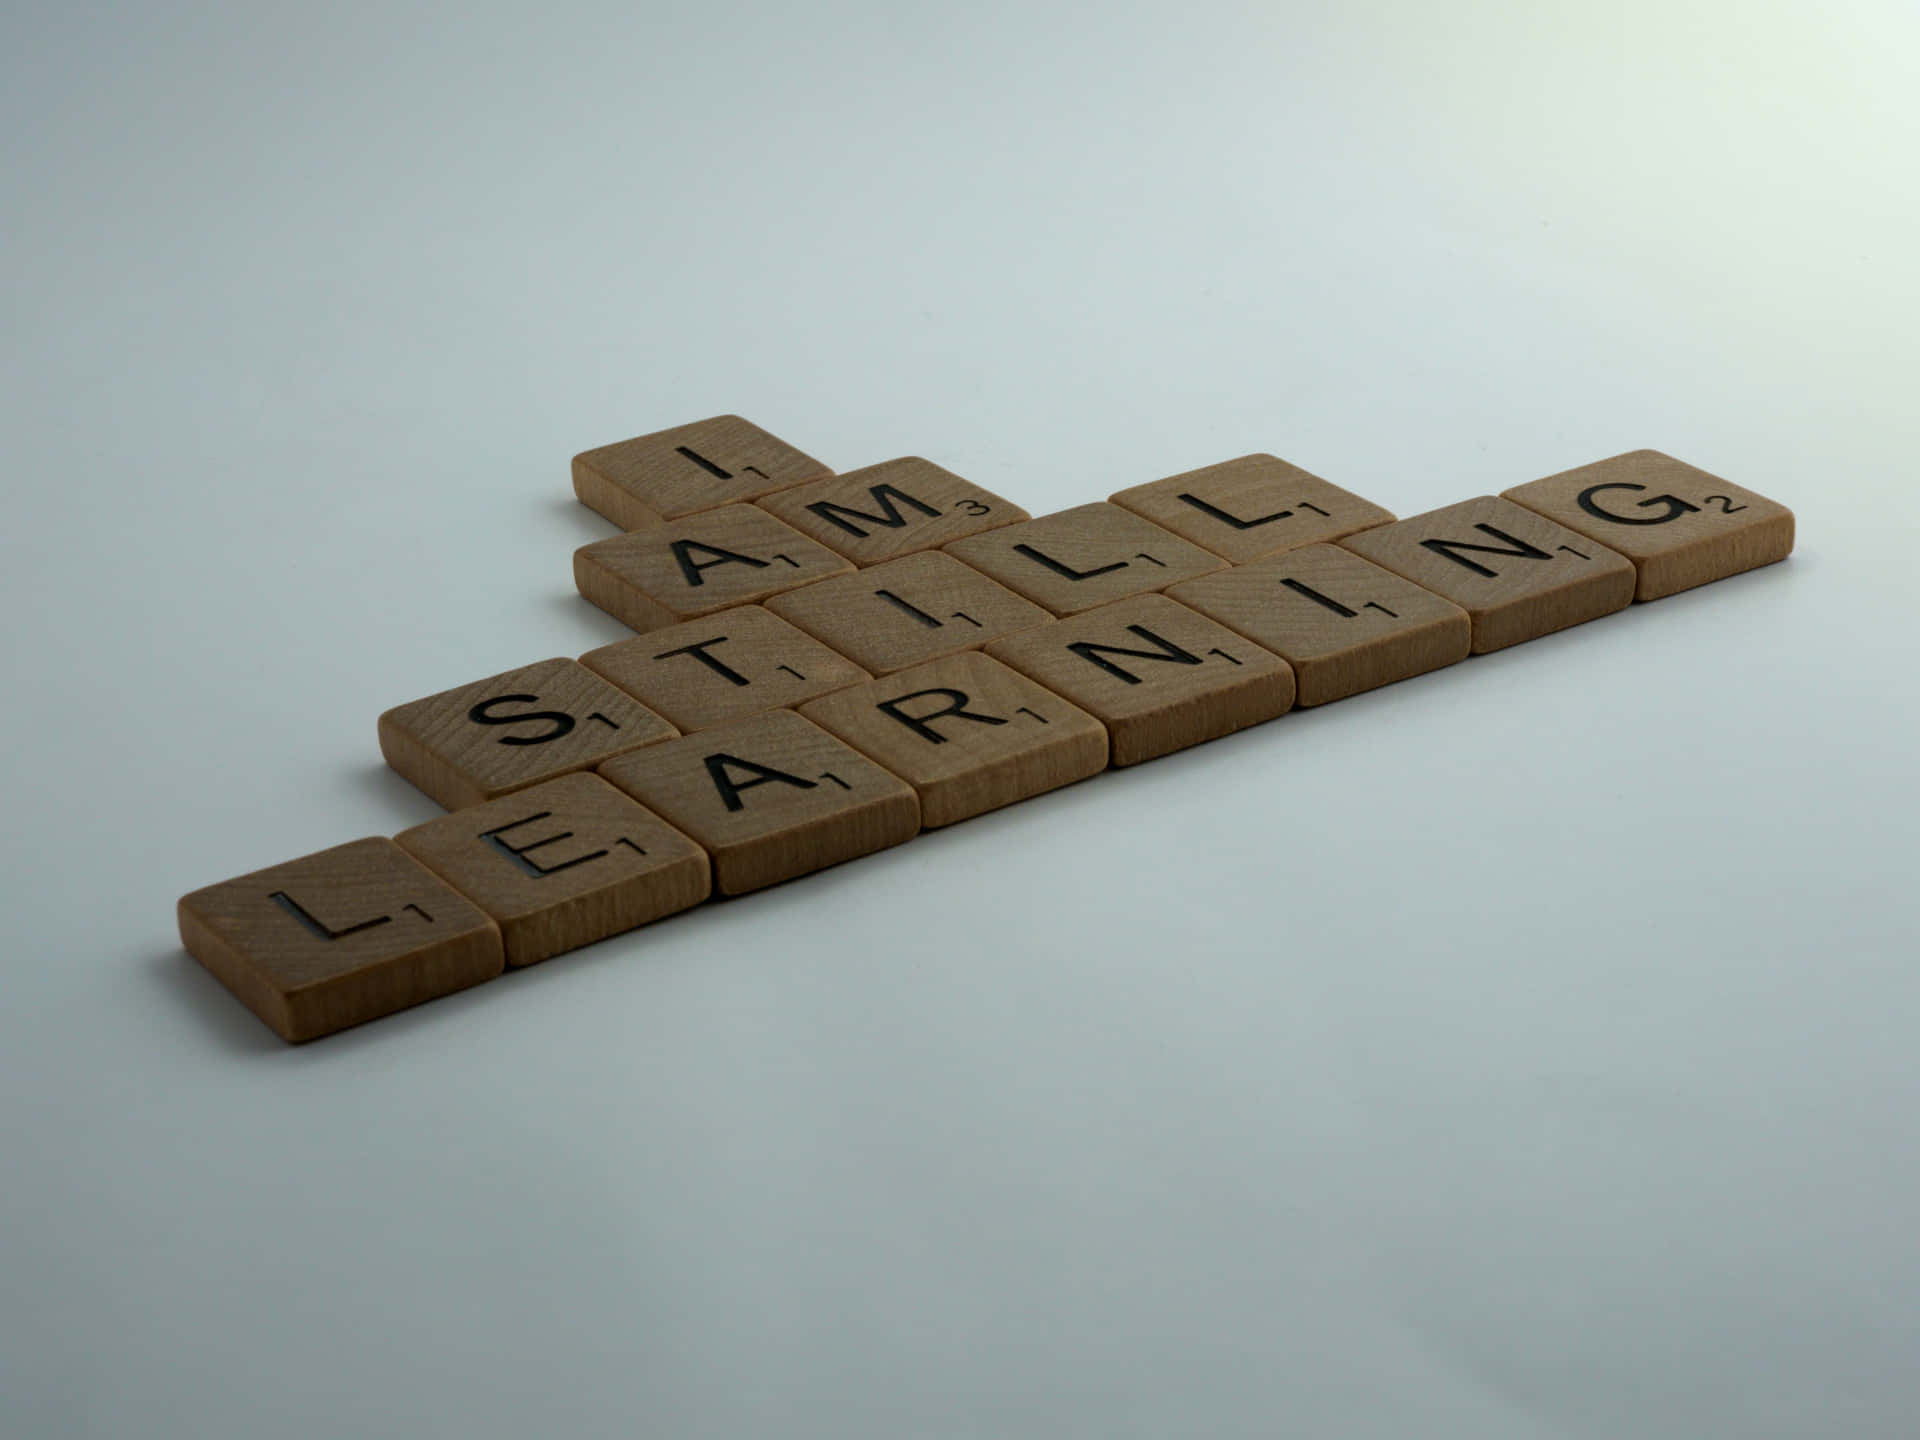 Jeger Stadig I Gang Med At Lære - Scrabble Brikker